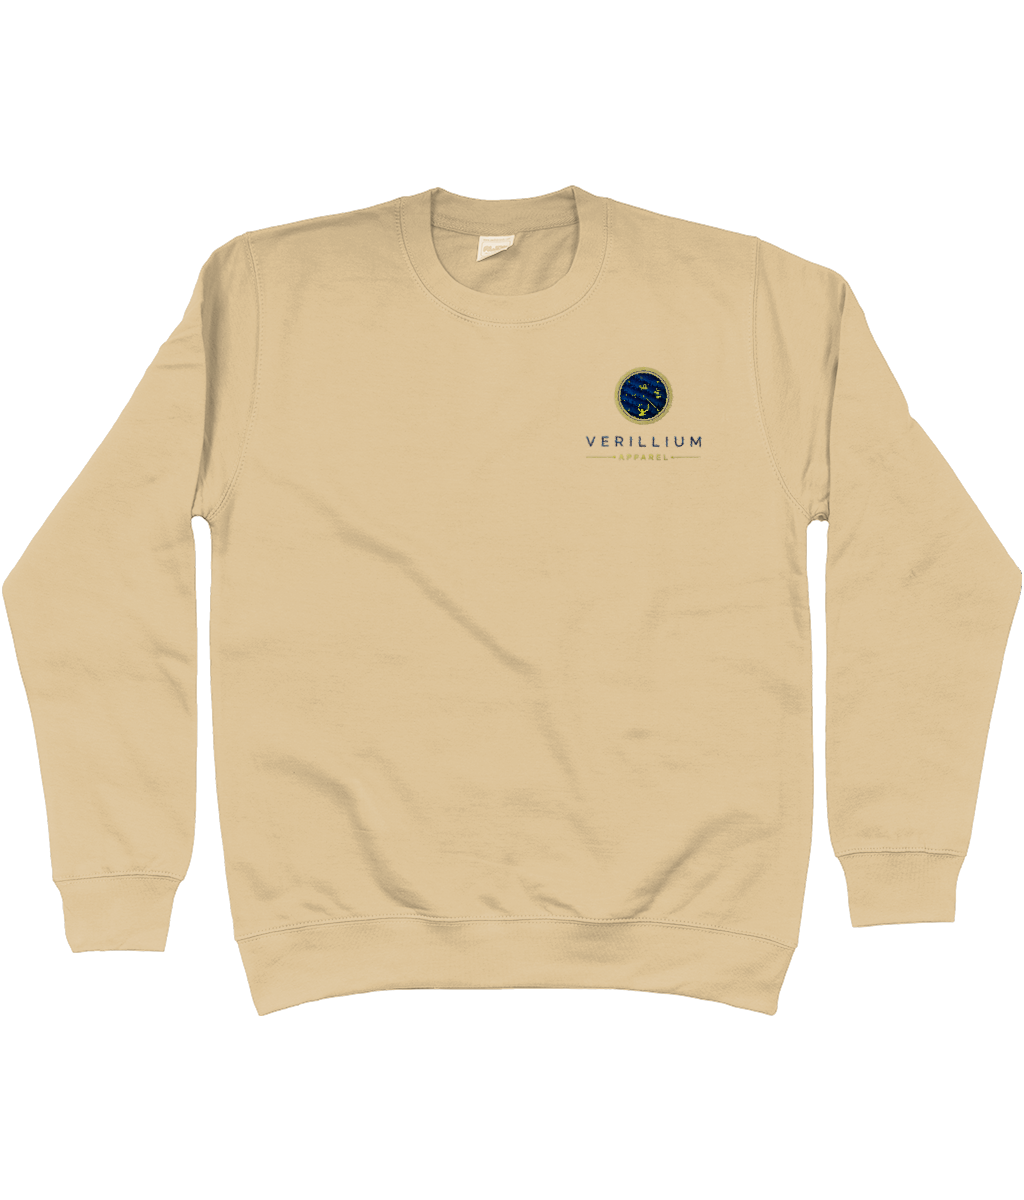 Embroidered Men's Sweatshirt - Verillium Apparel